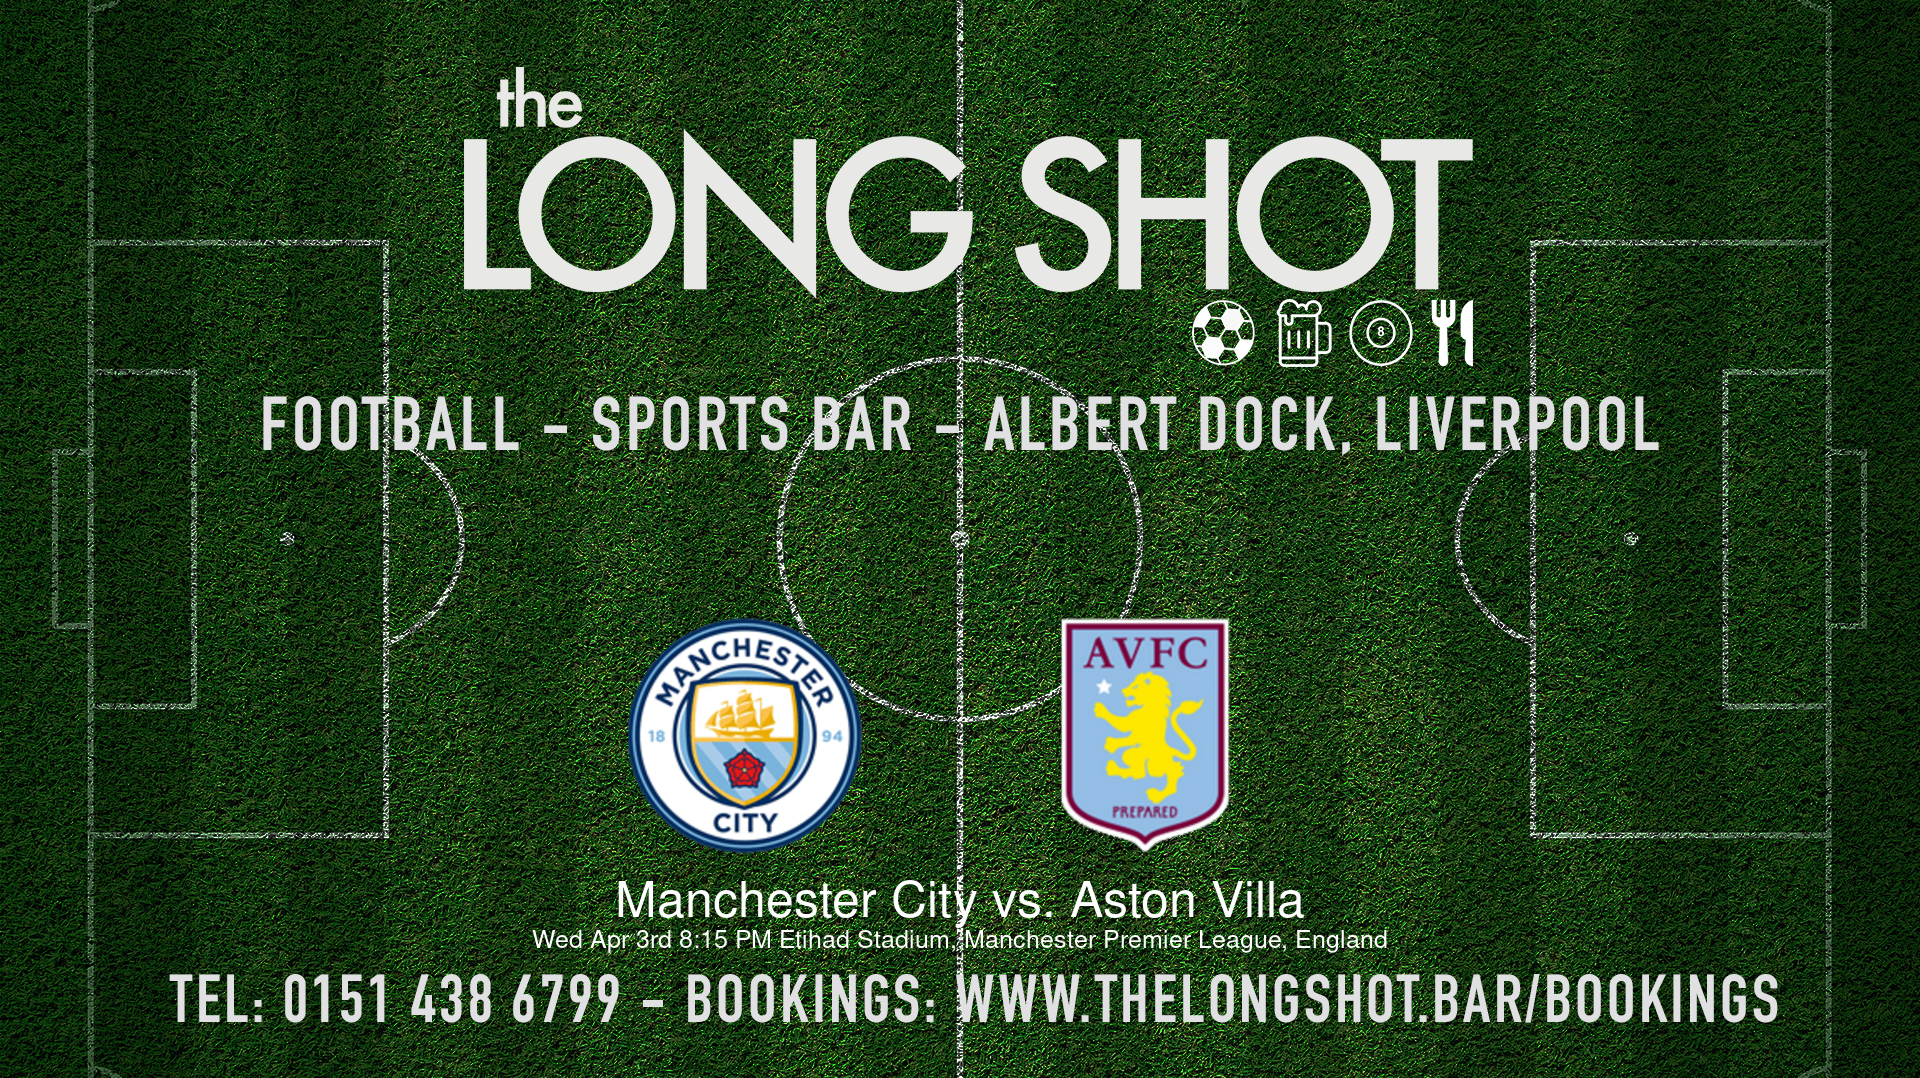 Event image - Manchester City vs. Aston Villa